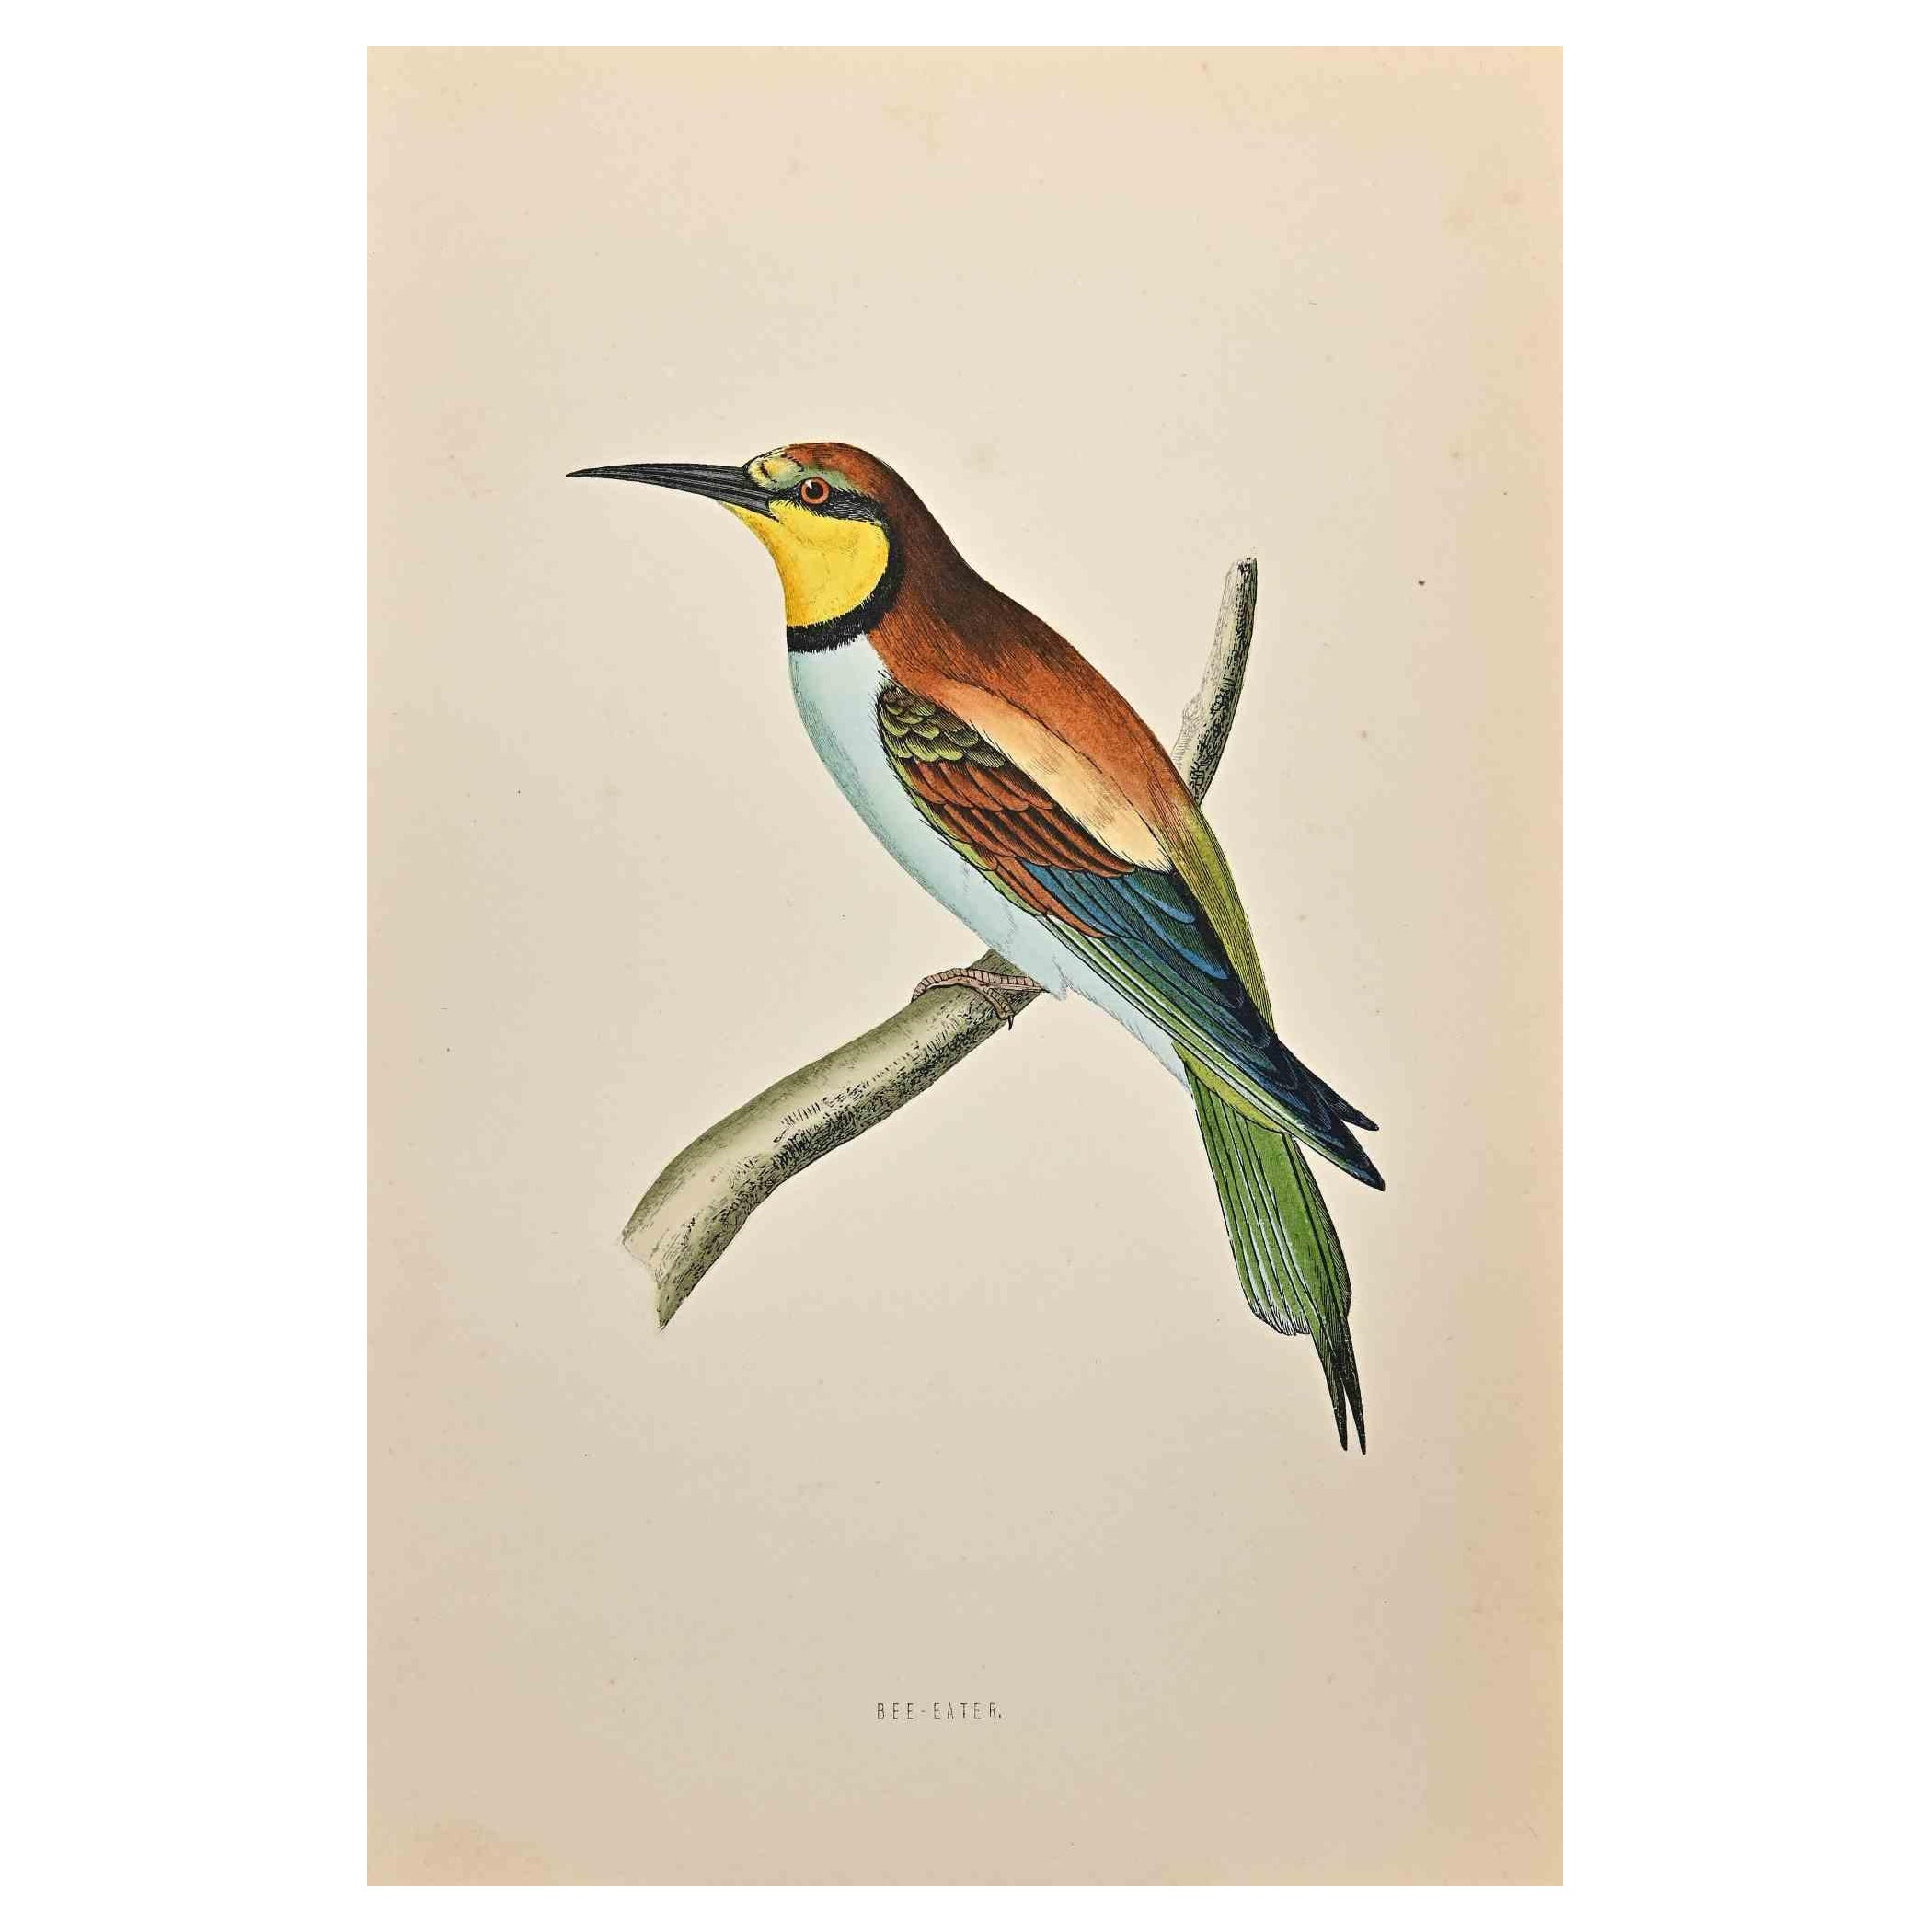 Bee-Eater est une œuvre d'art moderne réalisée en 1870 par l'artiste britannique Alexander Francis Lydon (1836-1917).

Gravure sur bois sur papier couleur ivoire.

Coloré à la main, publié par Londres, Bell & Sons, 1870.  

Le nom de l'oiseau est